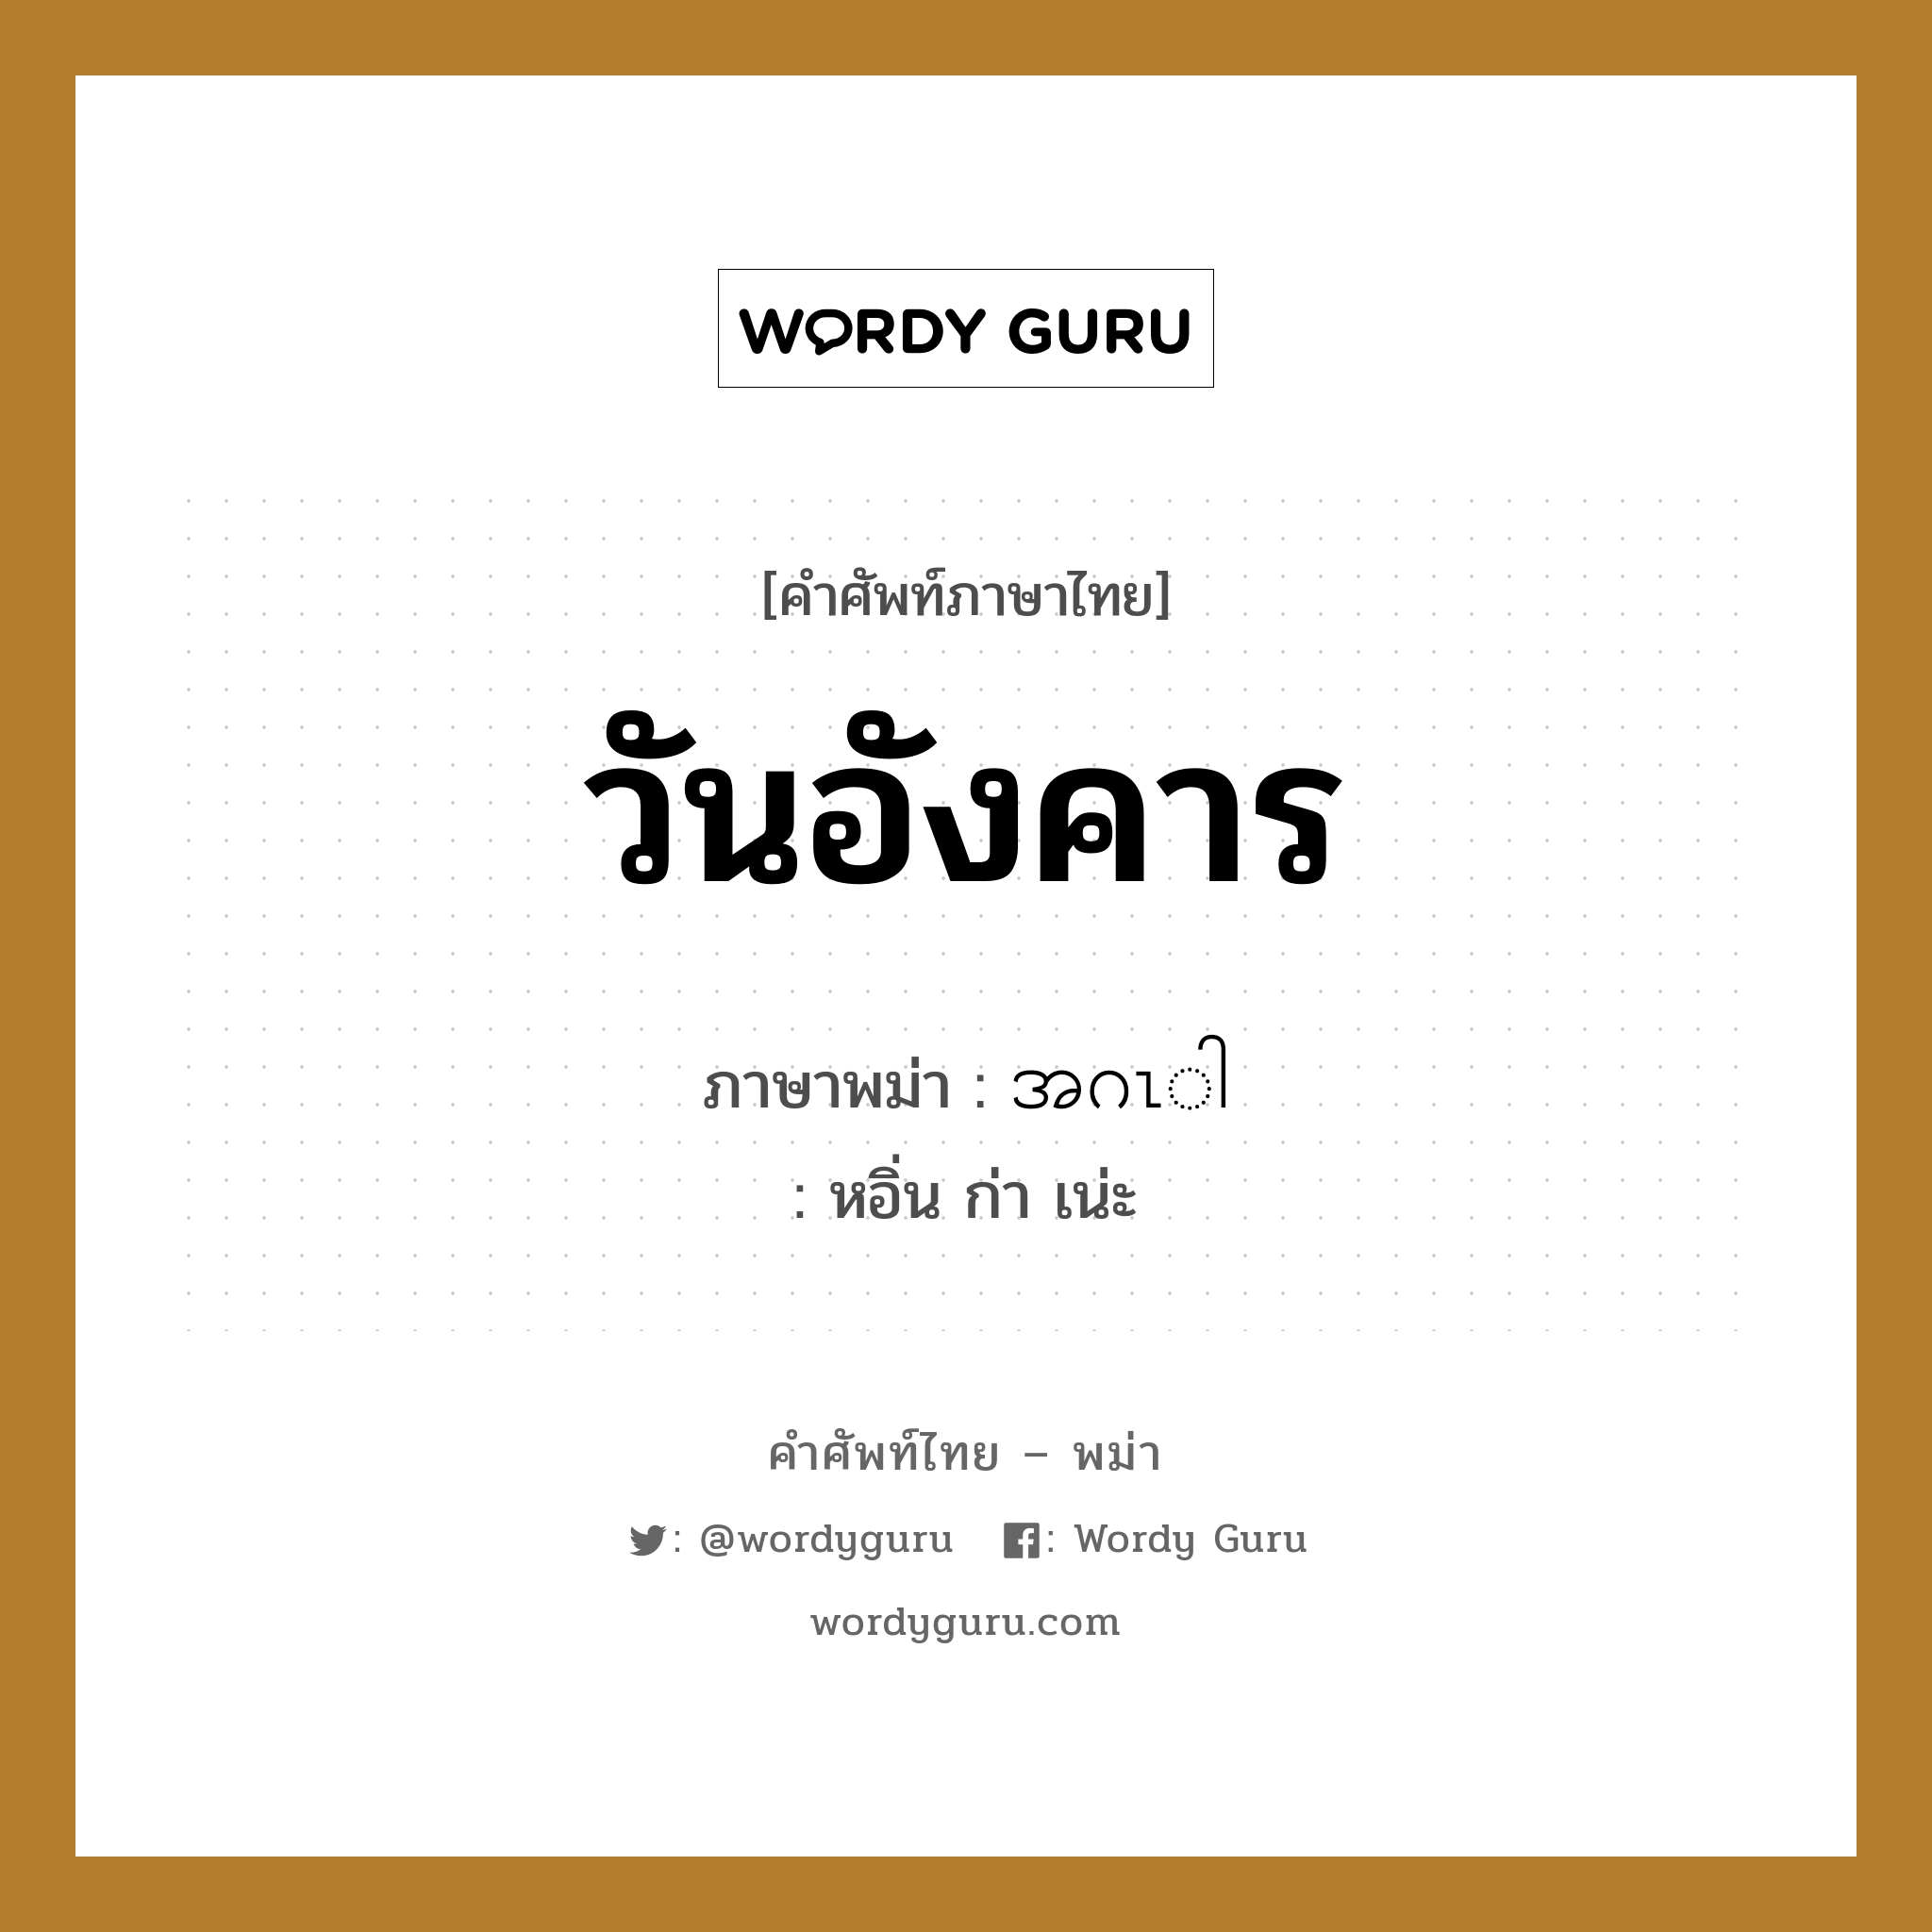 วันอังคาร ภาษาพม่าคืออะไร, คำศัพท์ภาษาไทย - พม่า วันอังคาร ภาษาพม่า အဂၤါ หมวด หมวดวัน เดือน ปี หอิ่น ก่า เน่ะ หมวด หมวดวัน เดือน ปี